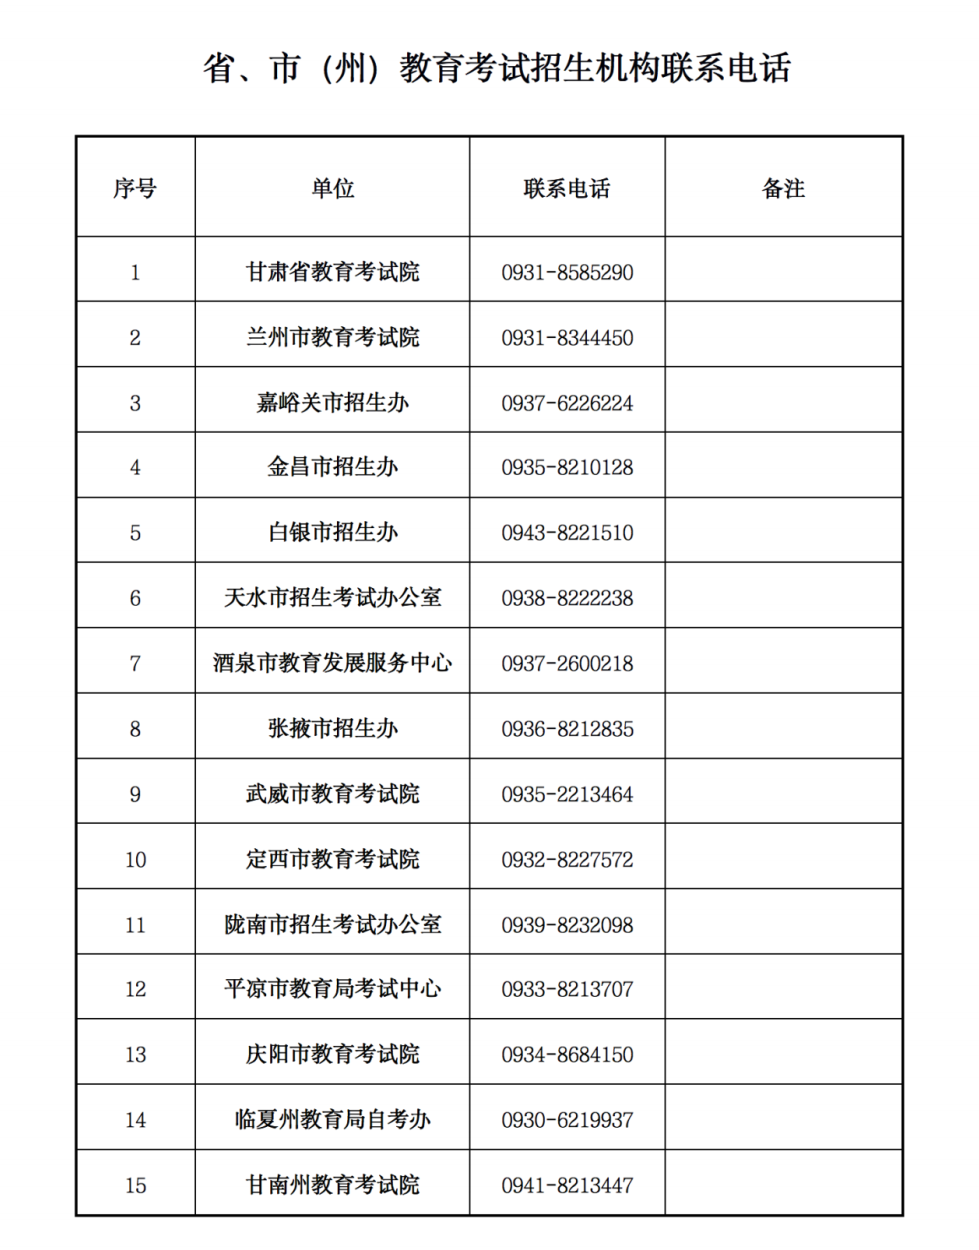 关于甘肃省2021年下半年中小学教师资格考试笔试推迟组织实施的公告